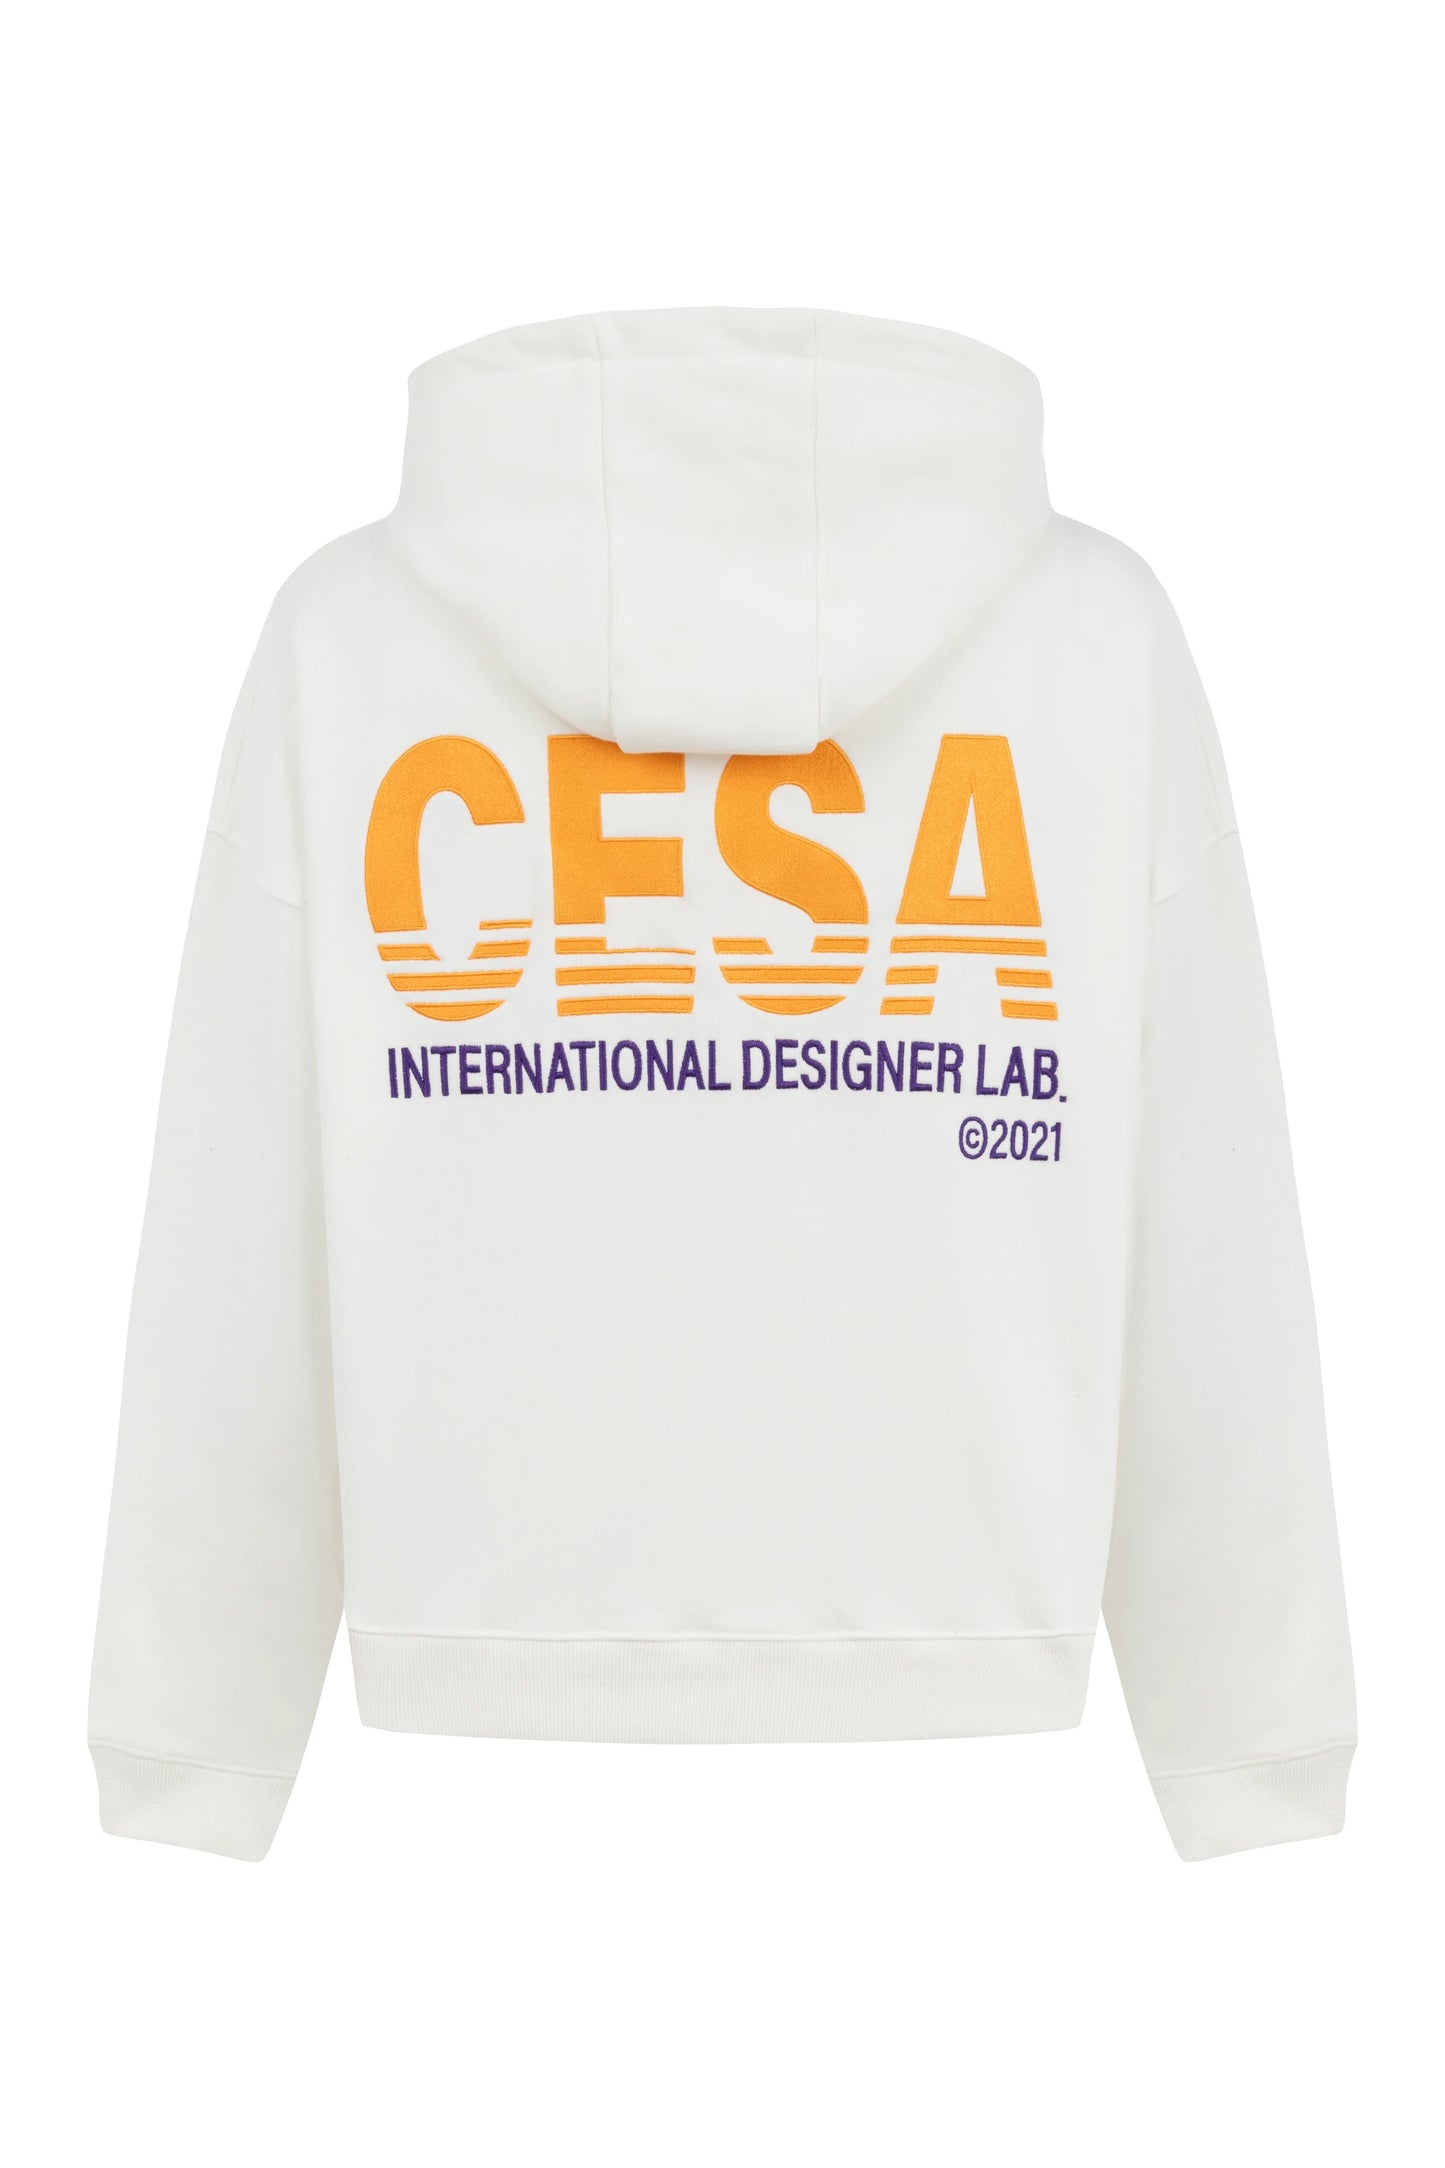 Cesa Classic Zip-Hoodie Int. Design Lab Cream